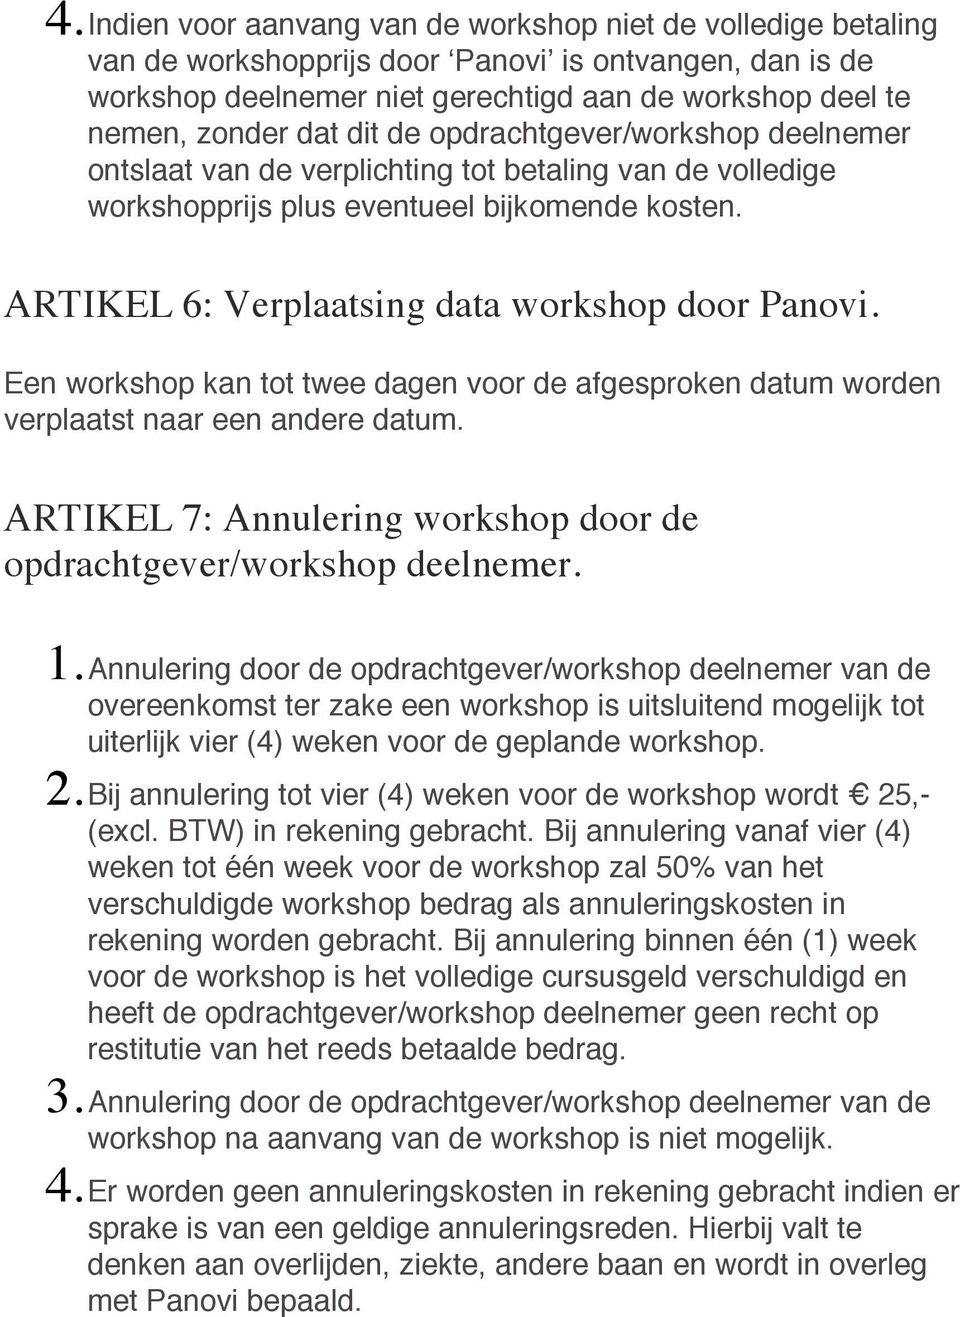 Een workshop kan tot twee dagen voor de afgesproken datum worden verplaatst naar een andere datum. ARTIKEL 7: Annulering workshop door de opdrachtgever/workshop deelnemer. 1.